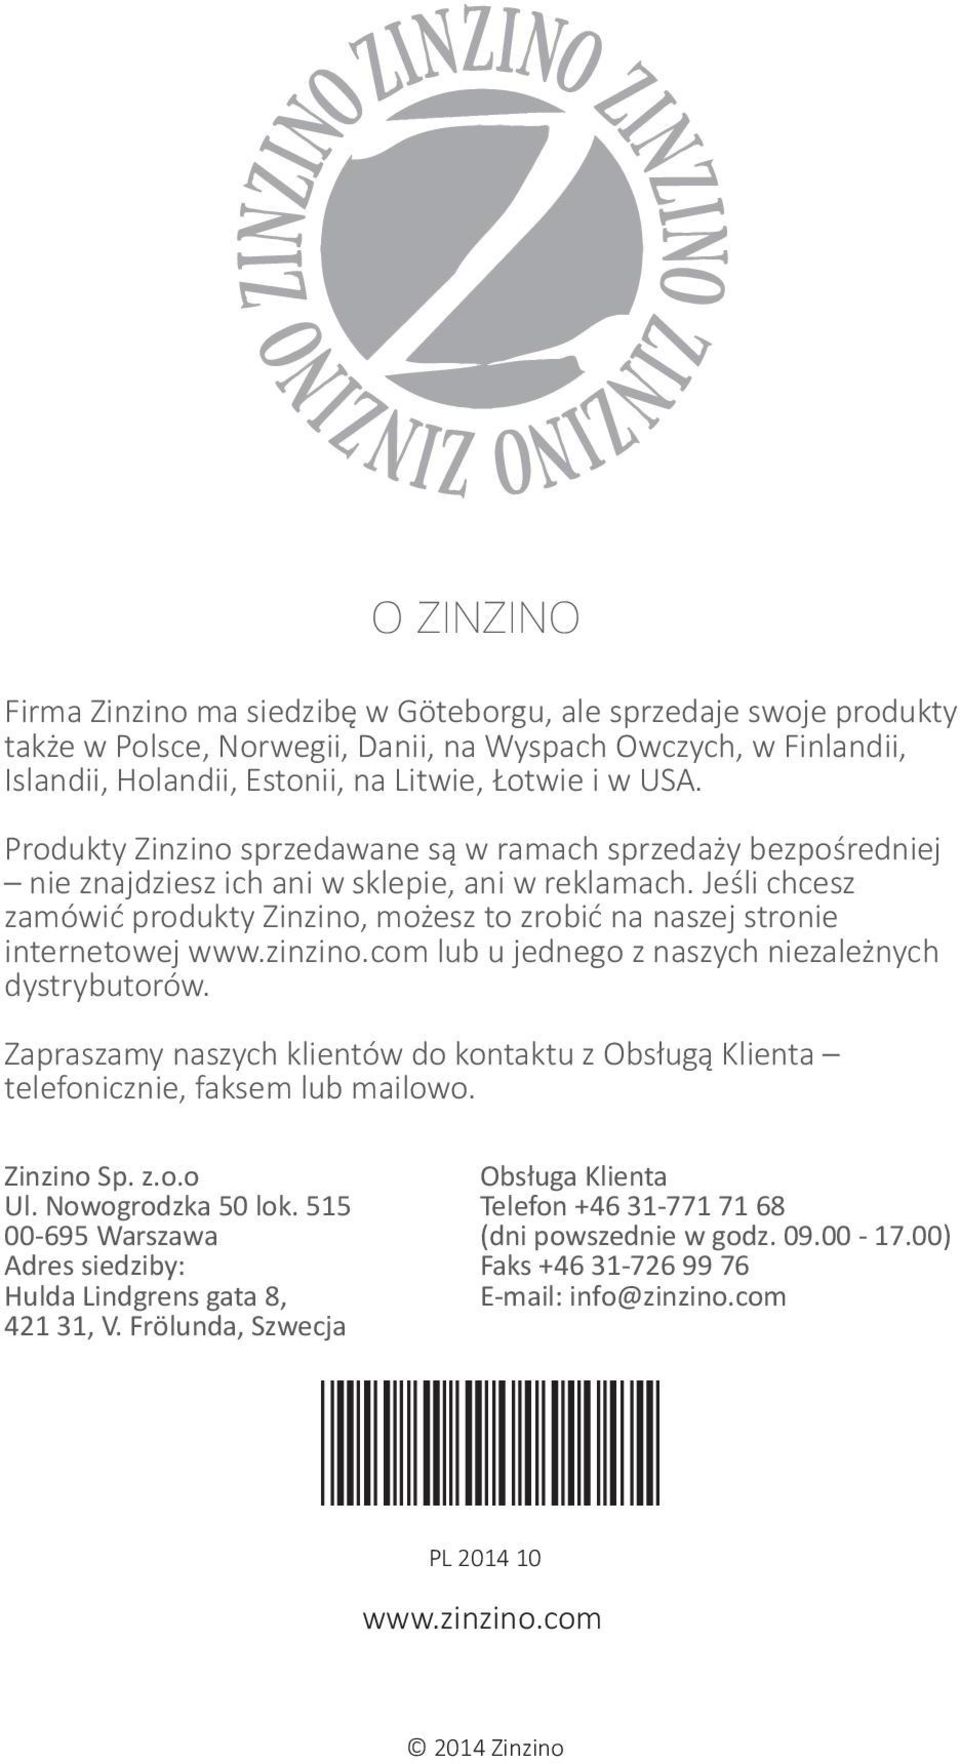 Jeśli chcesz zamówić produkty Zinzino, możesz to zrobić na naszej stronie internetowej www.zinzino.com lub u jednego z naszych niezależnych dystrybutorów.